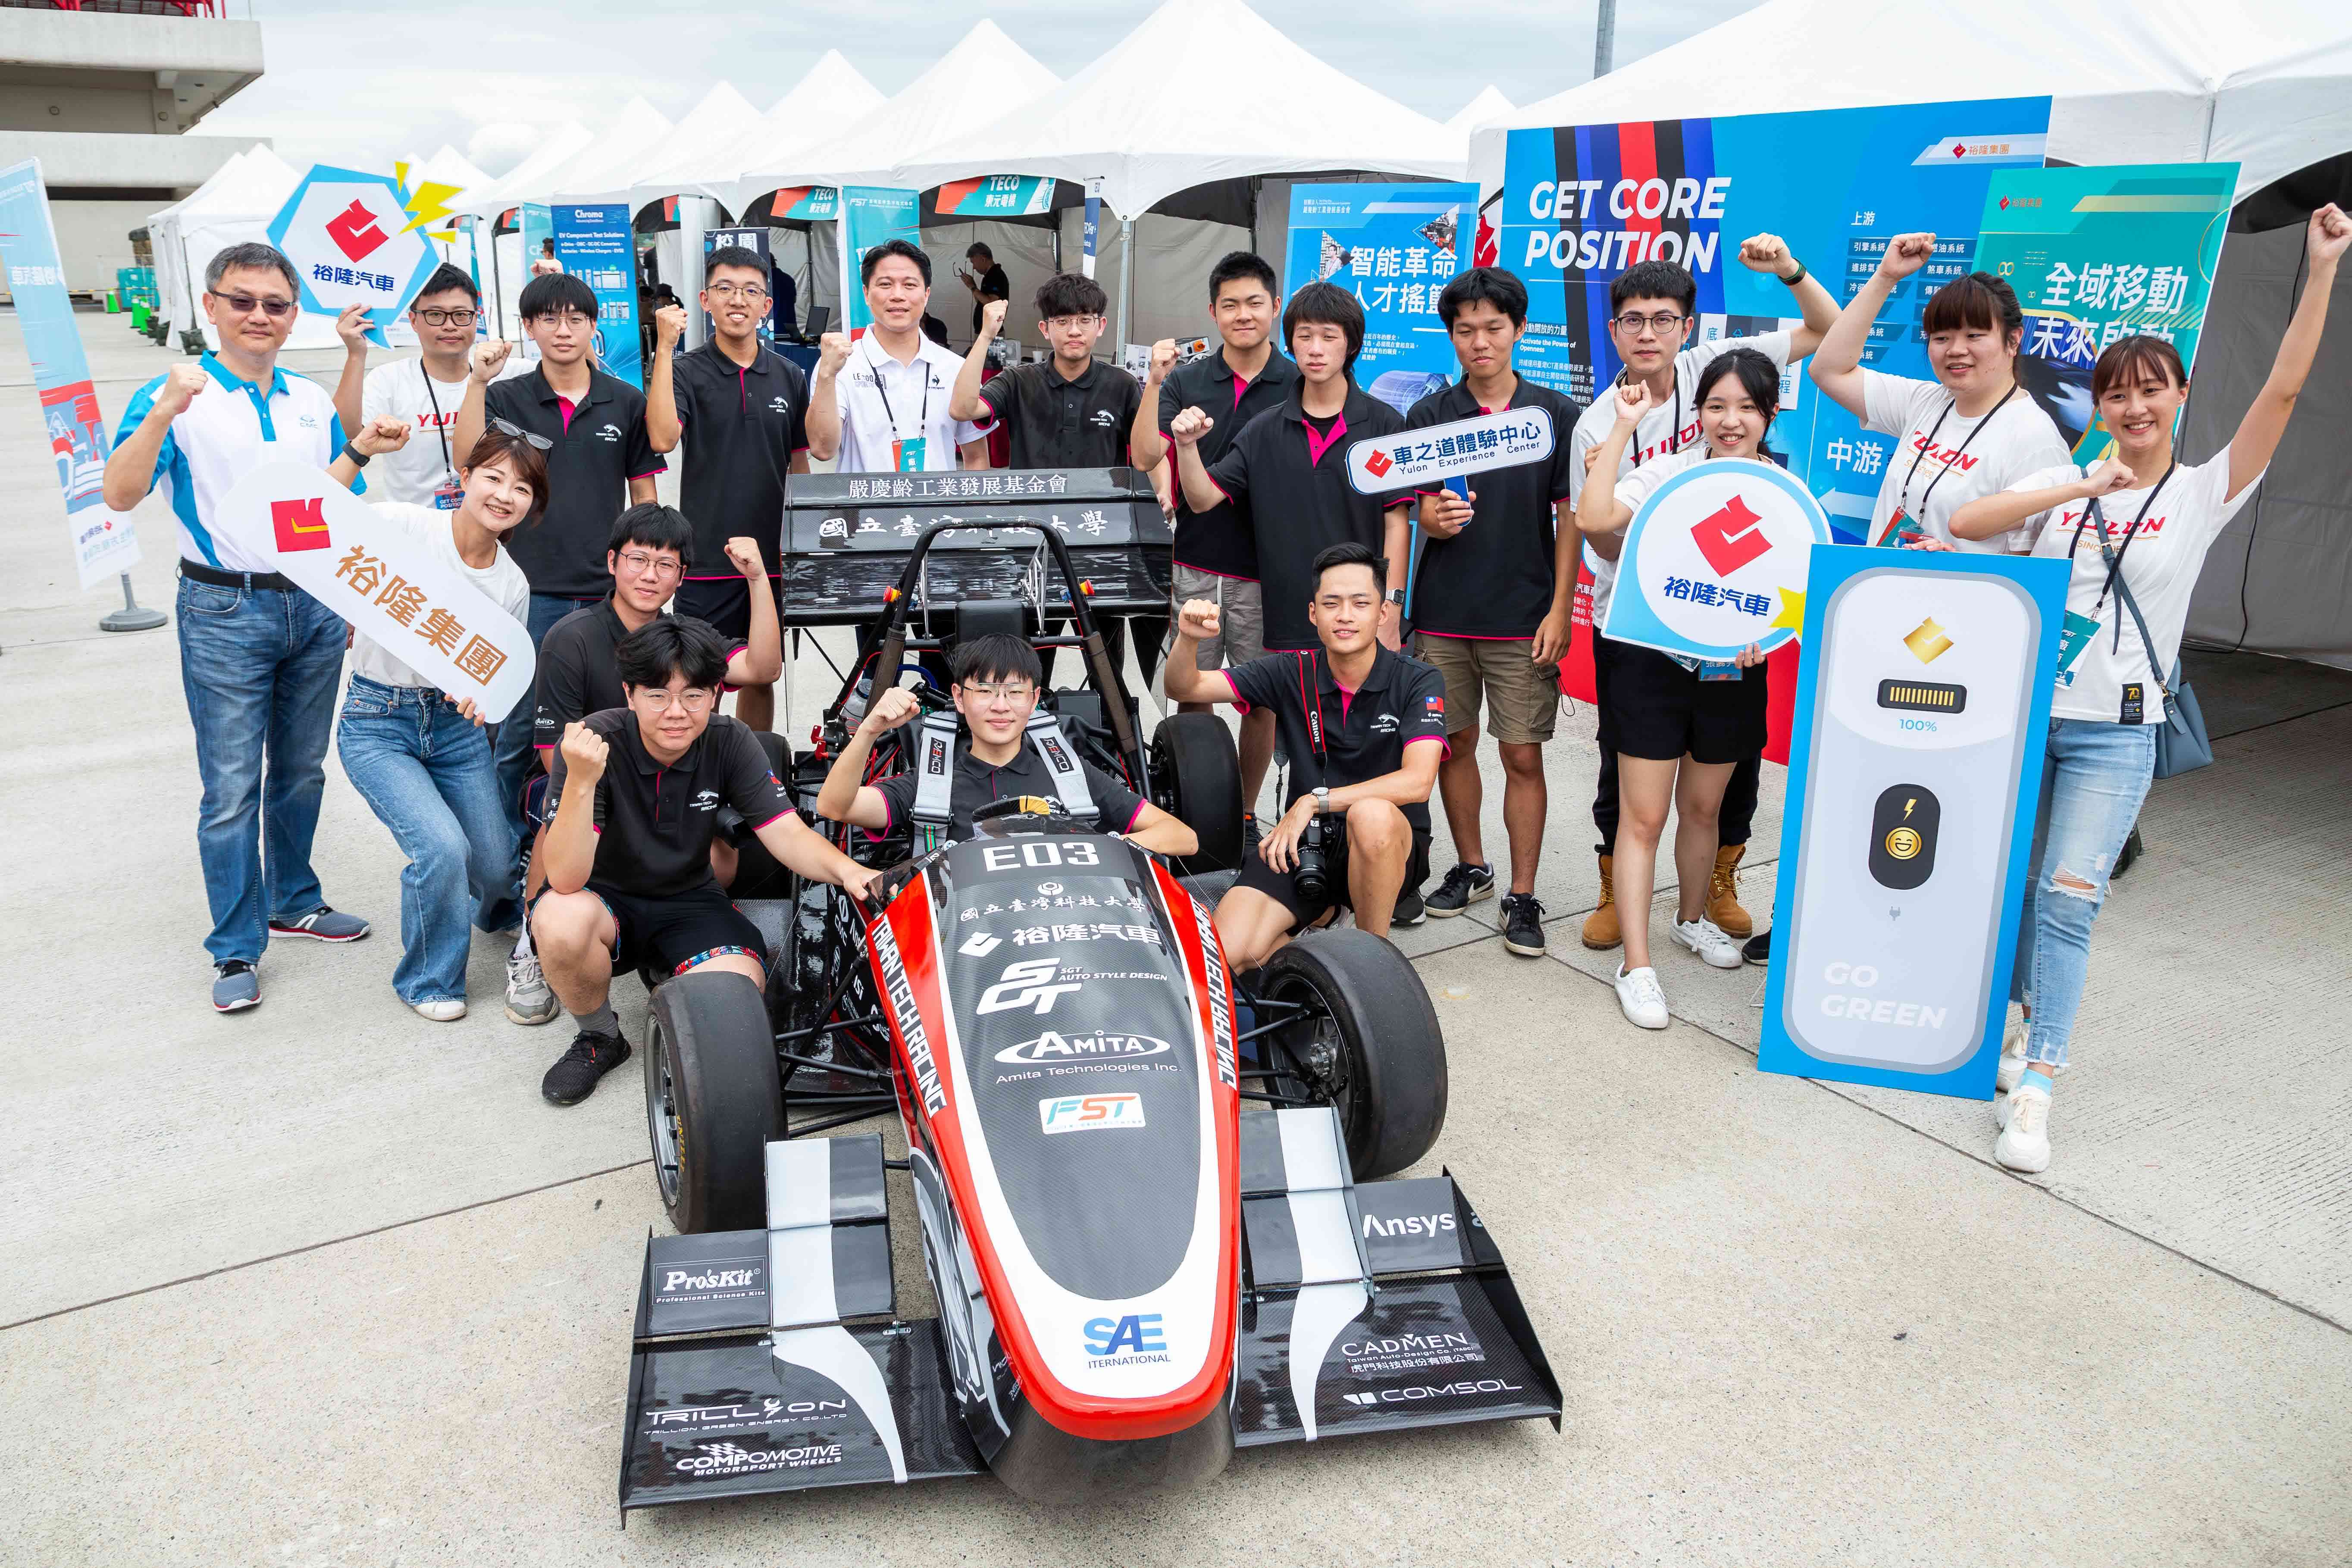 裕隆集團70永續行動  培育台灣造車人才嚴慶齡工業基金會贊助FST學生方程式   支持年輕學子工程造車夢